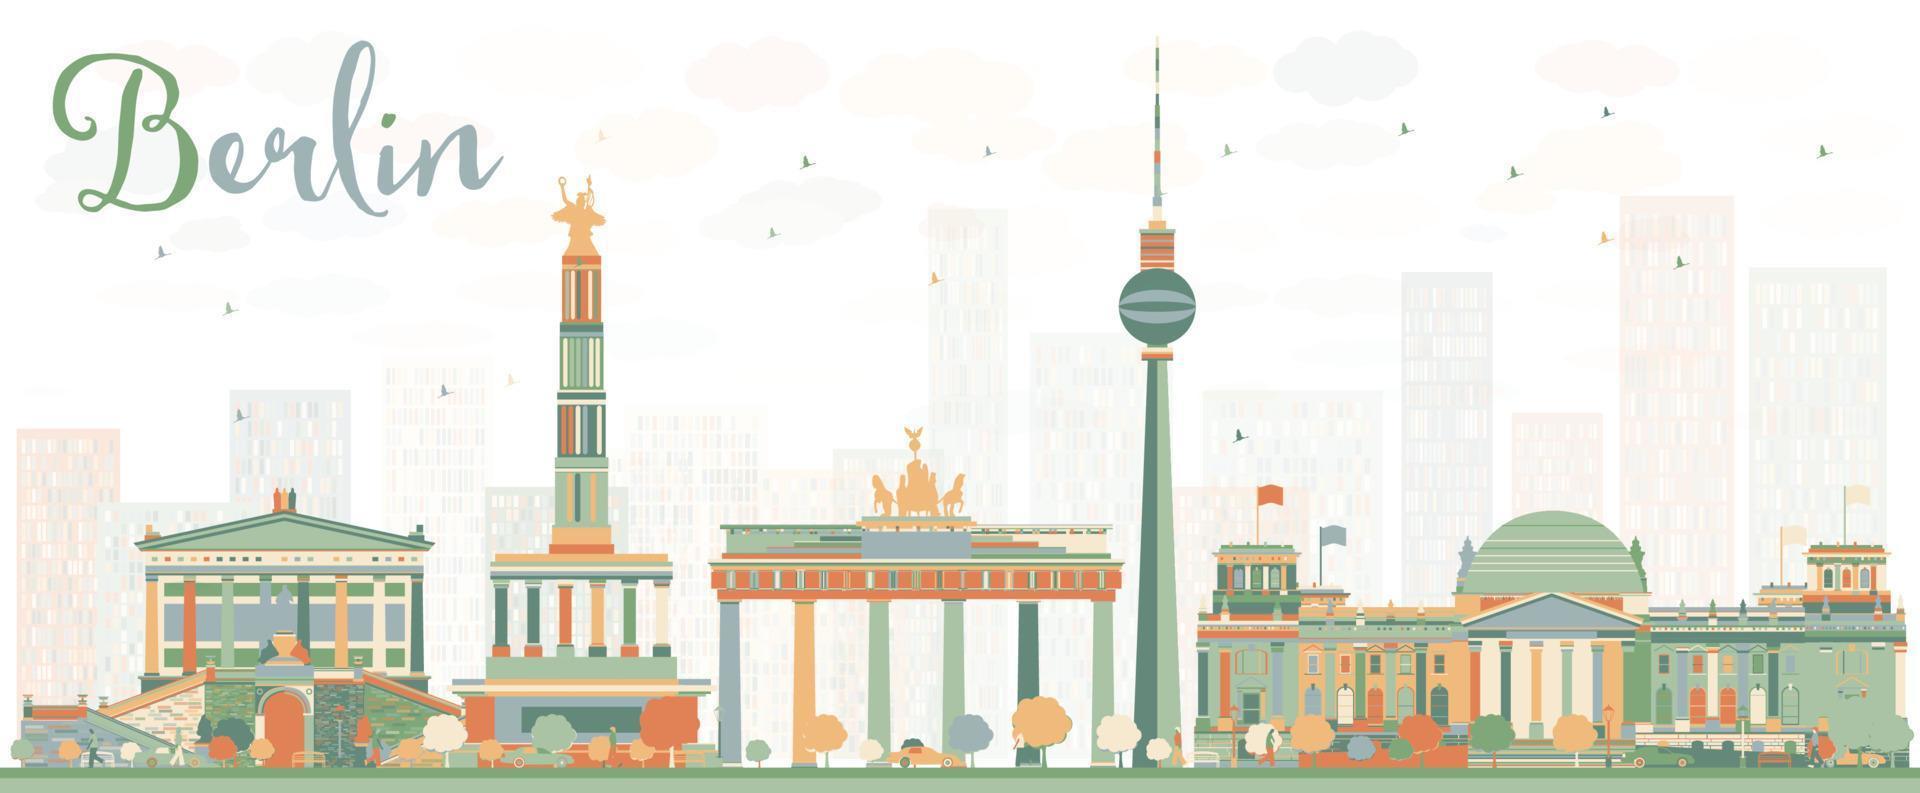 abstrakte berliner skyline mit farbigen gebäuden. vektor